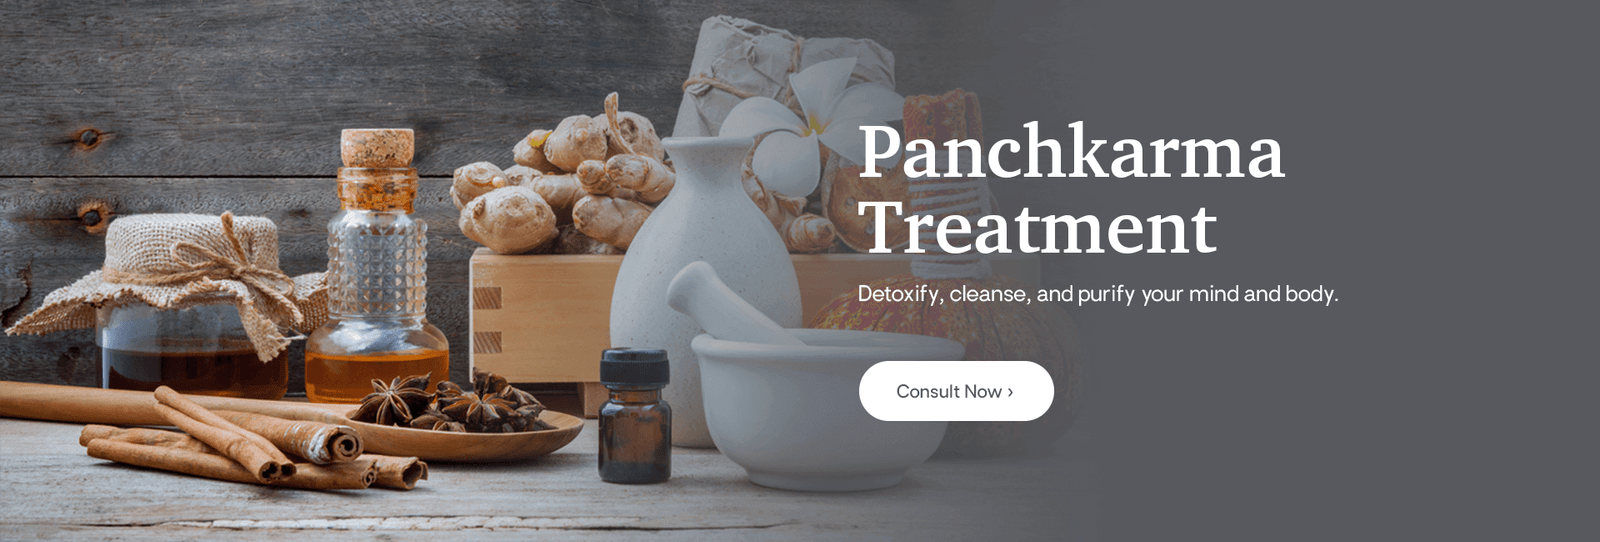 Ayurvedic Panchakarma Treatment: All Therapies & Procedures, Duration and Benefits